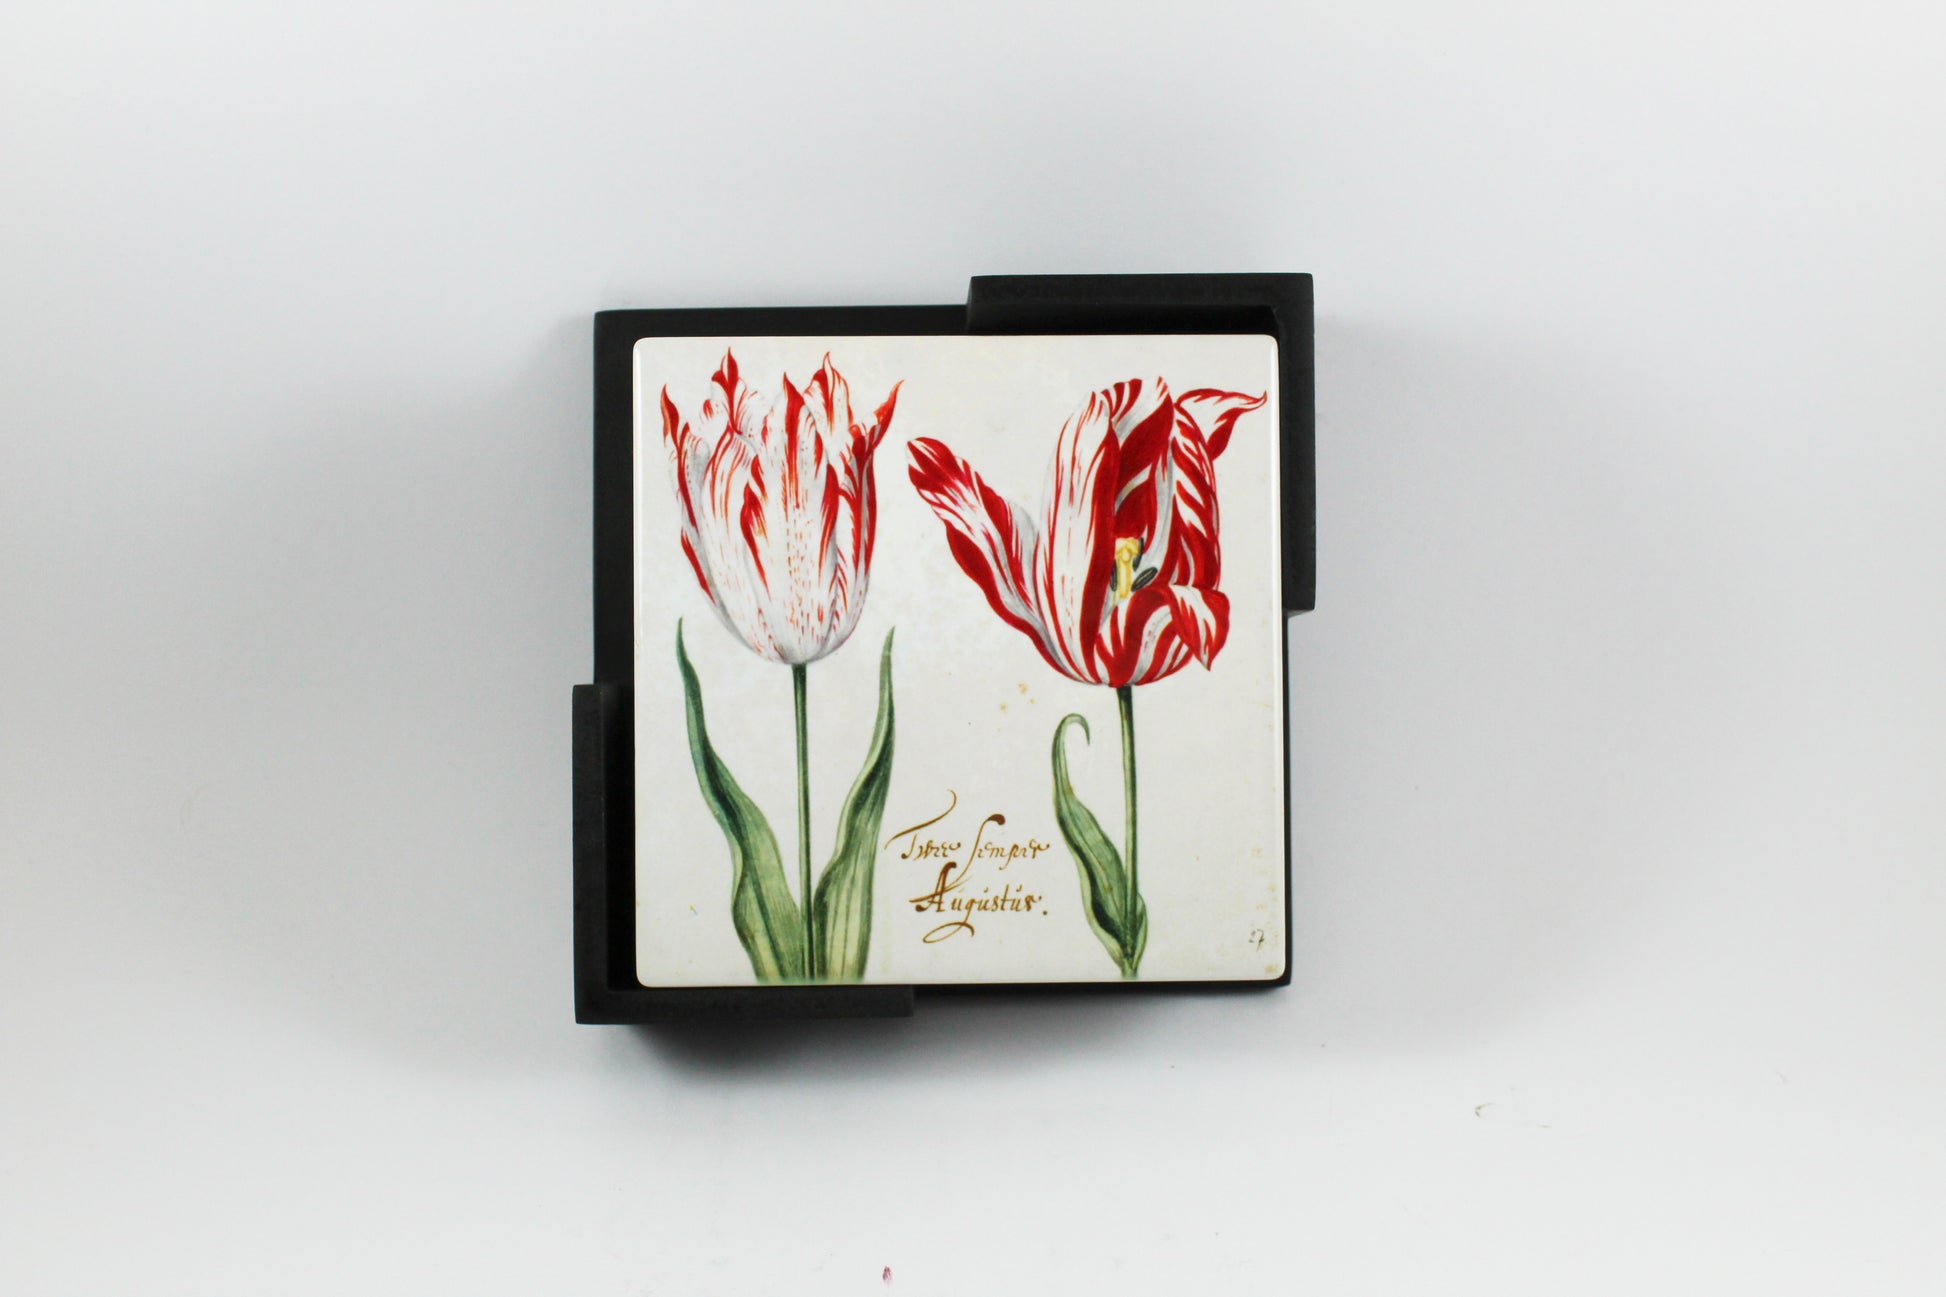 Amsterdam Tulip Museum Semper Augustus Tulip On White Ceramic Coaster Set